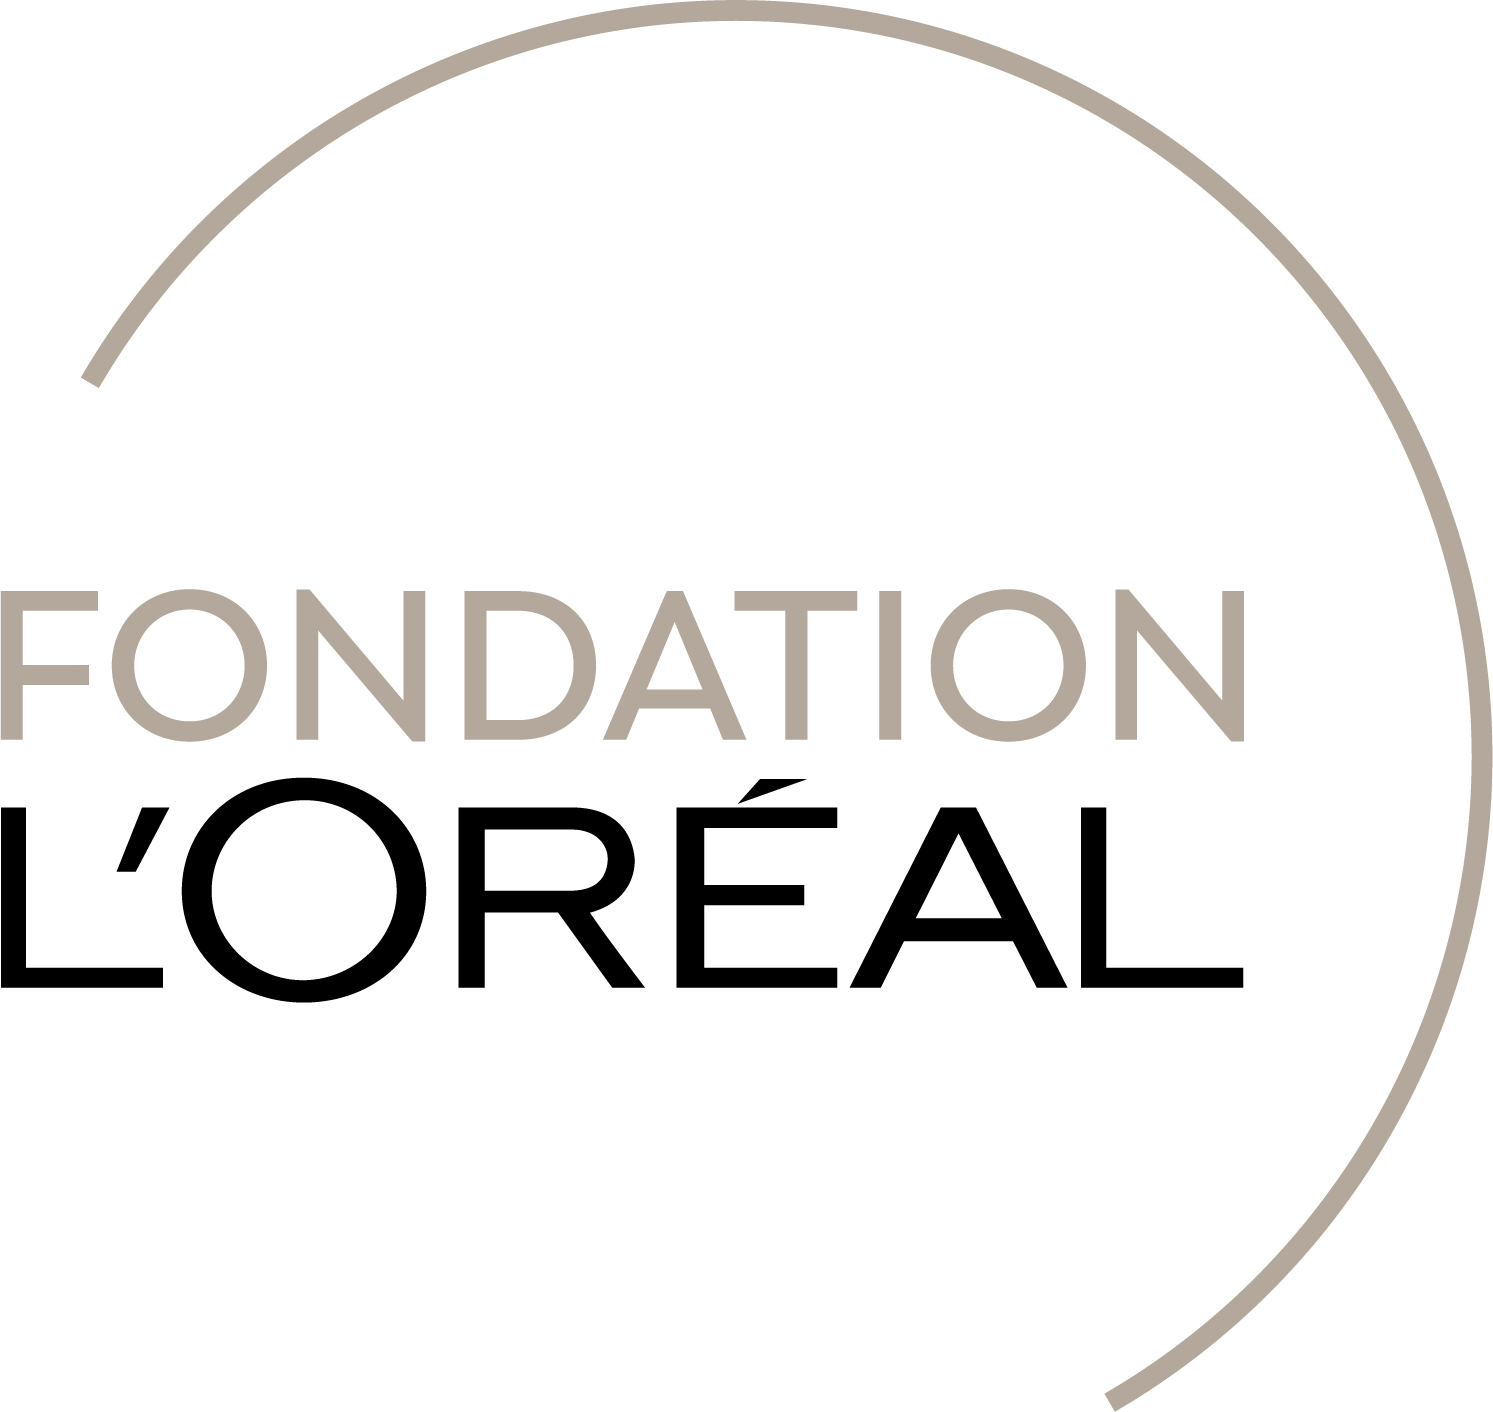 Fondation l'Oréal